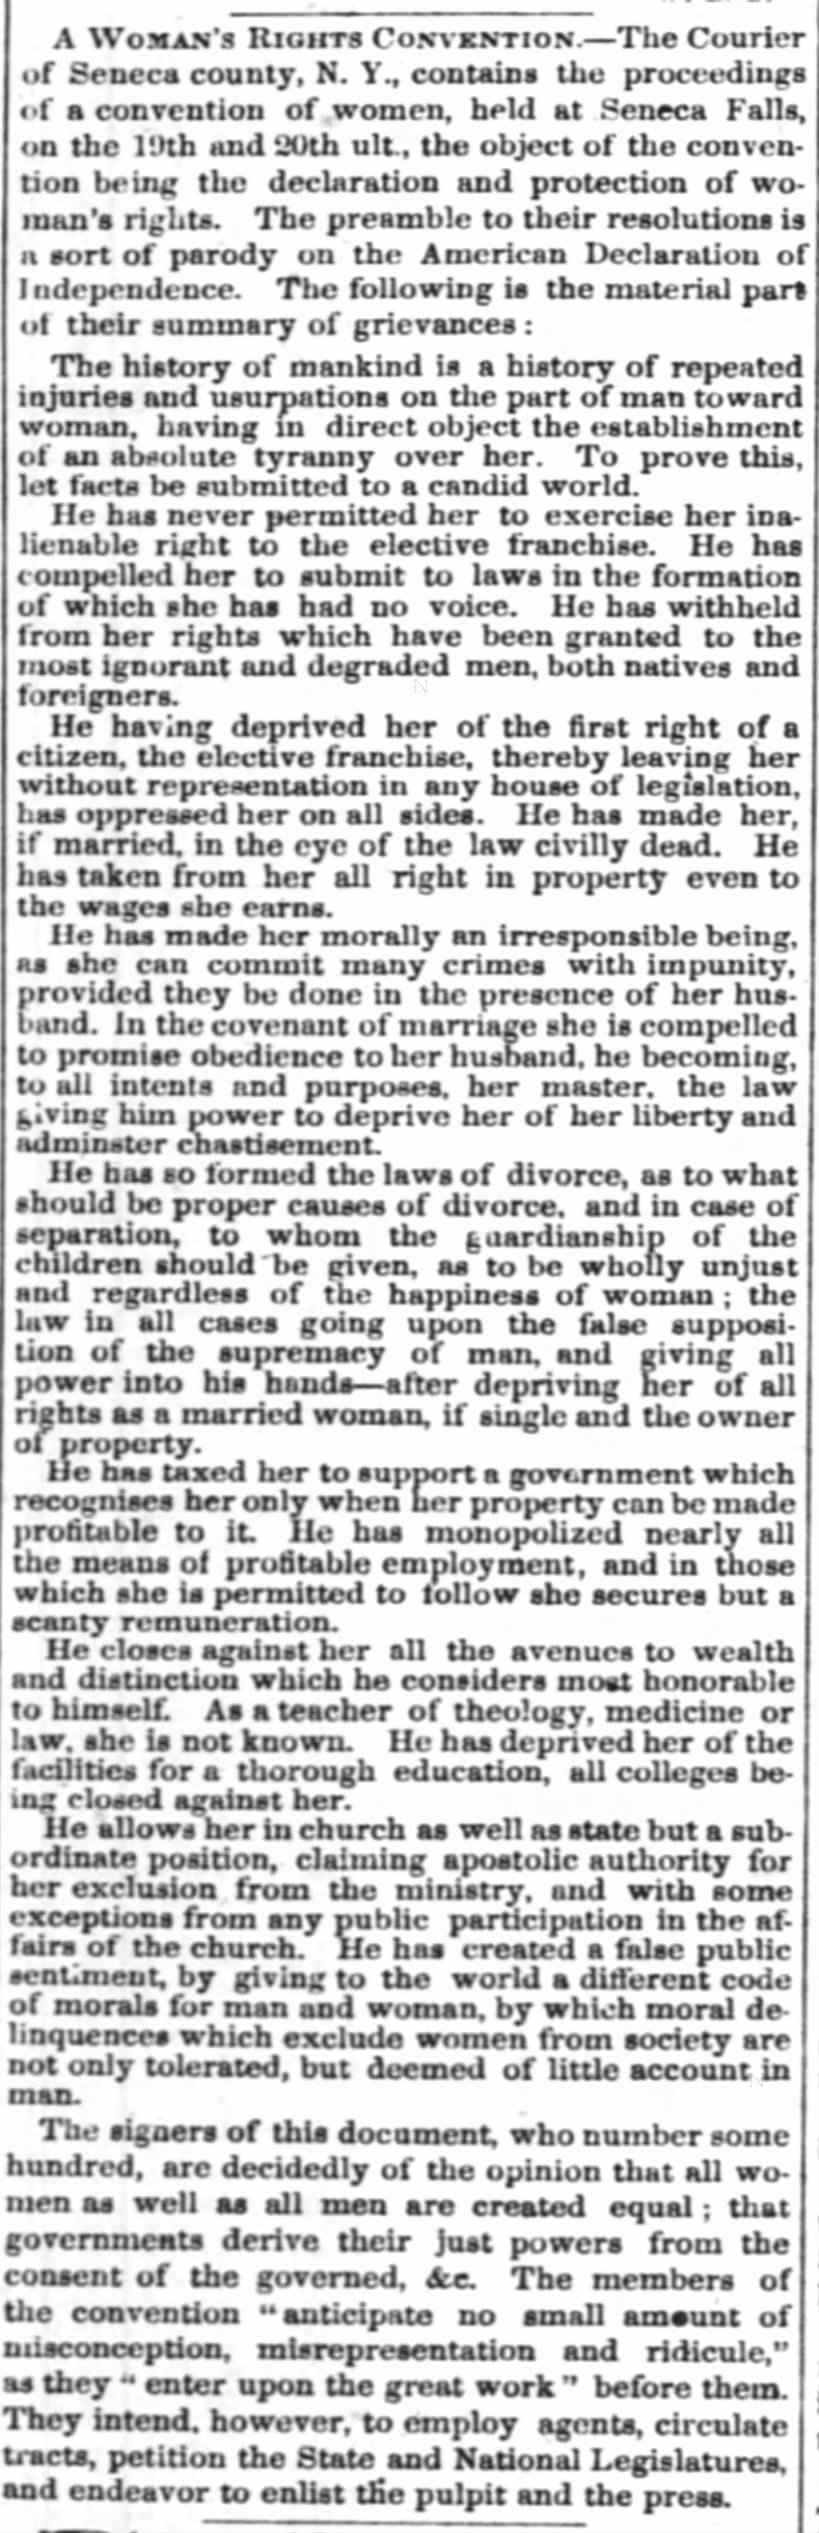 Woman's Rights Convention at Seneca Falls, NY, 1848.